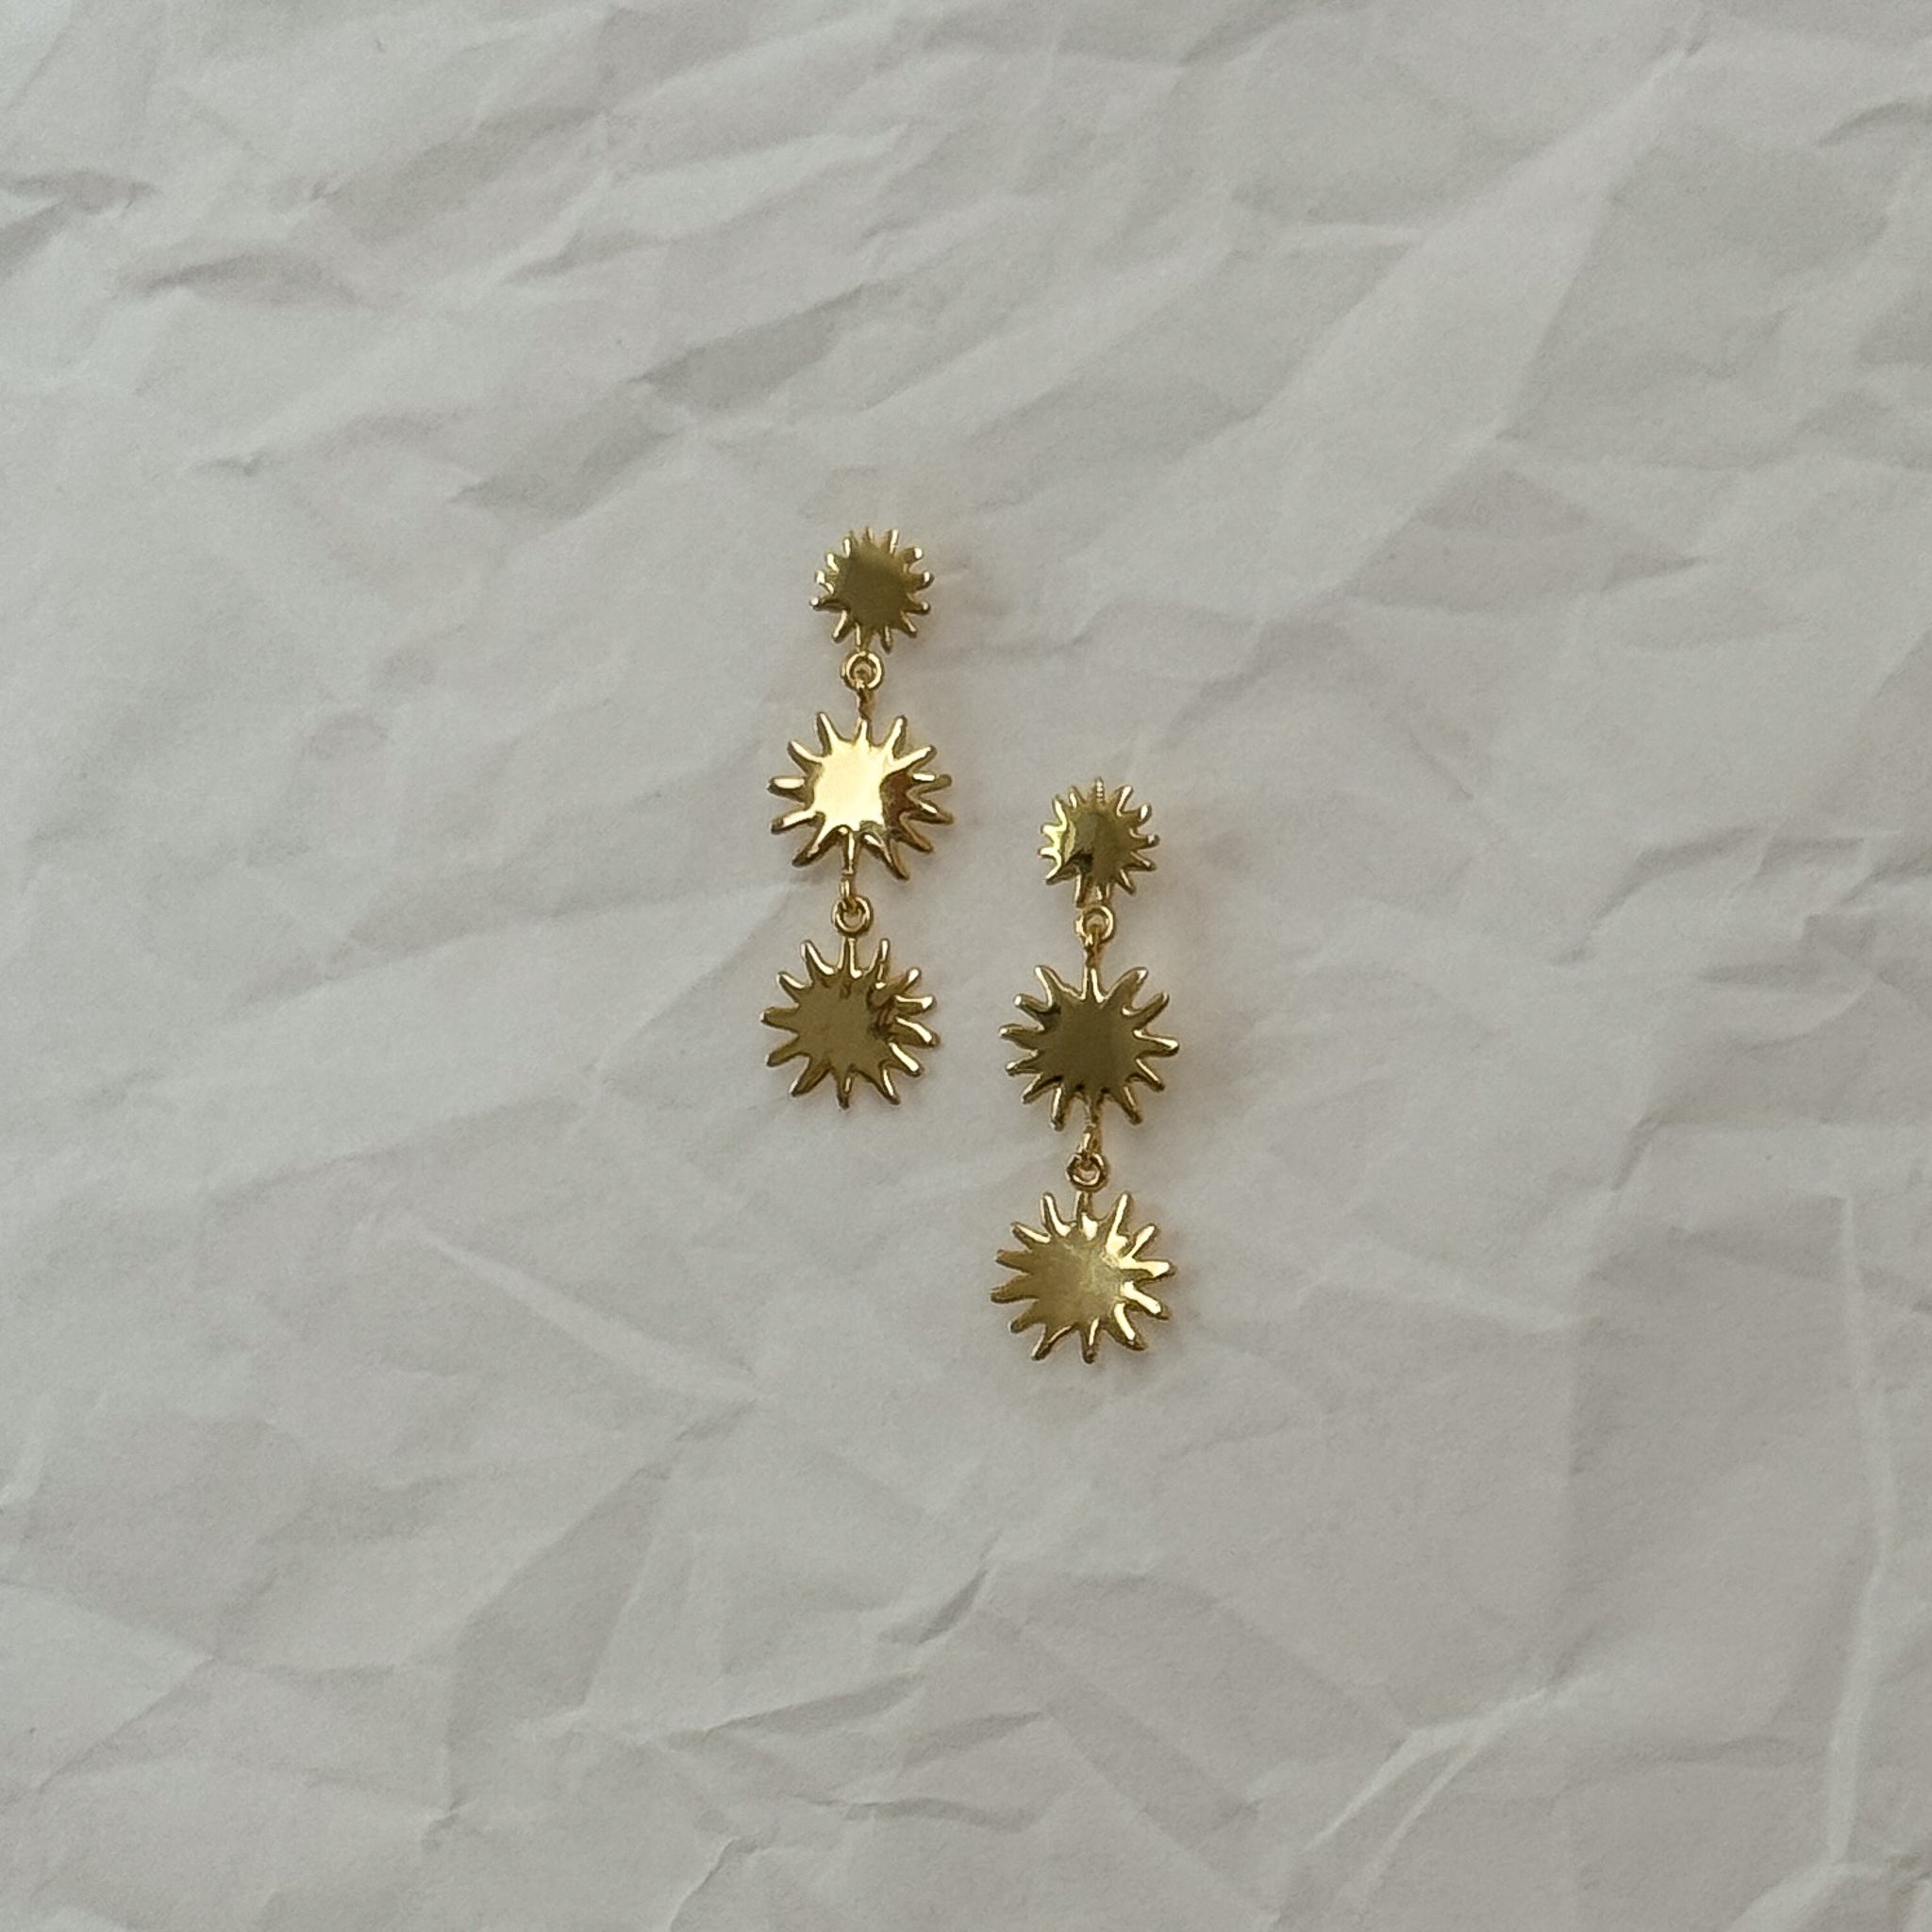 Triple Sunburst Flower Dangle Gold Earrings in 18k Gold Vermeil 925 Sterling Silver